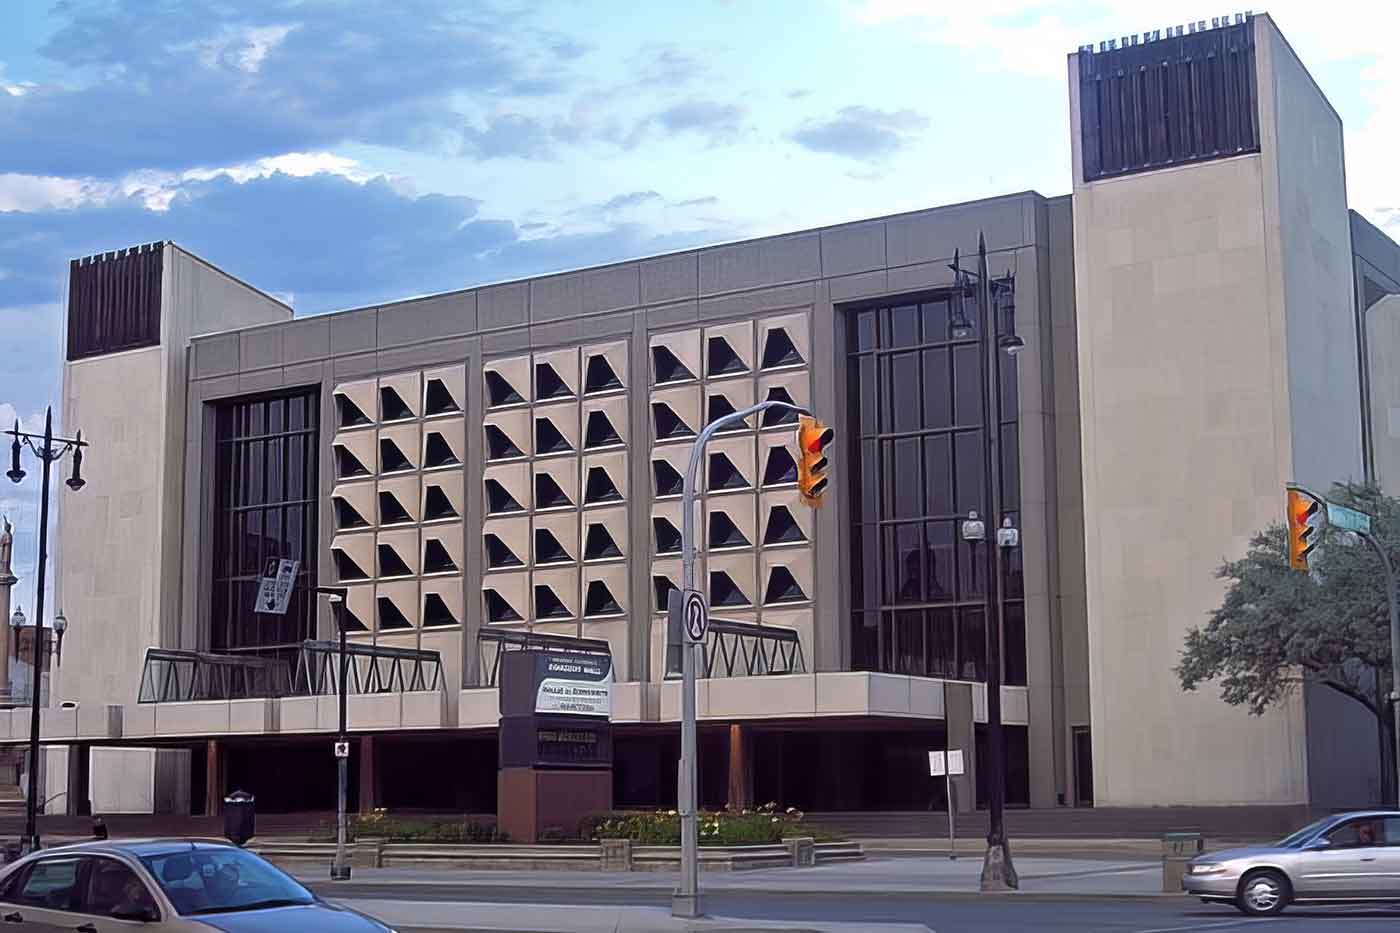 Manitoba Centennial Center